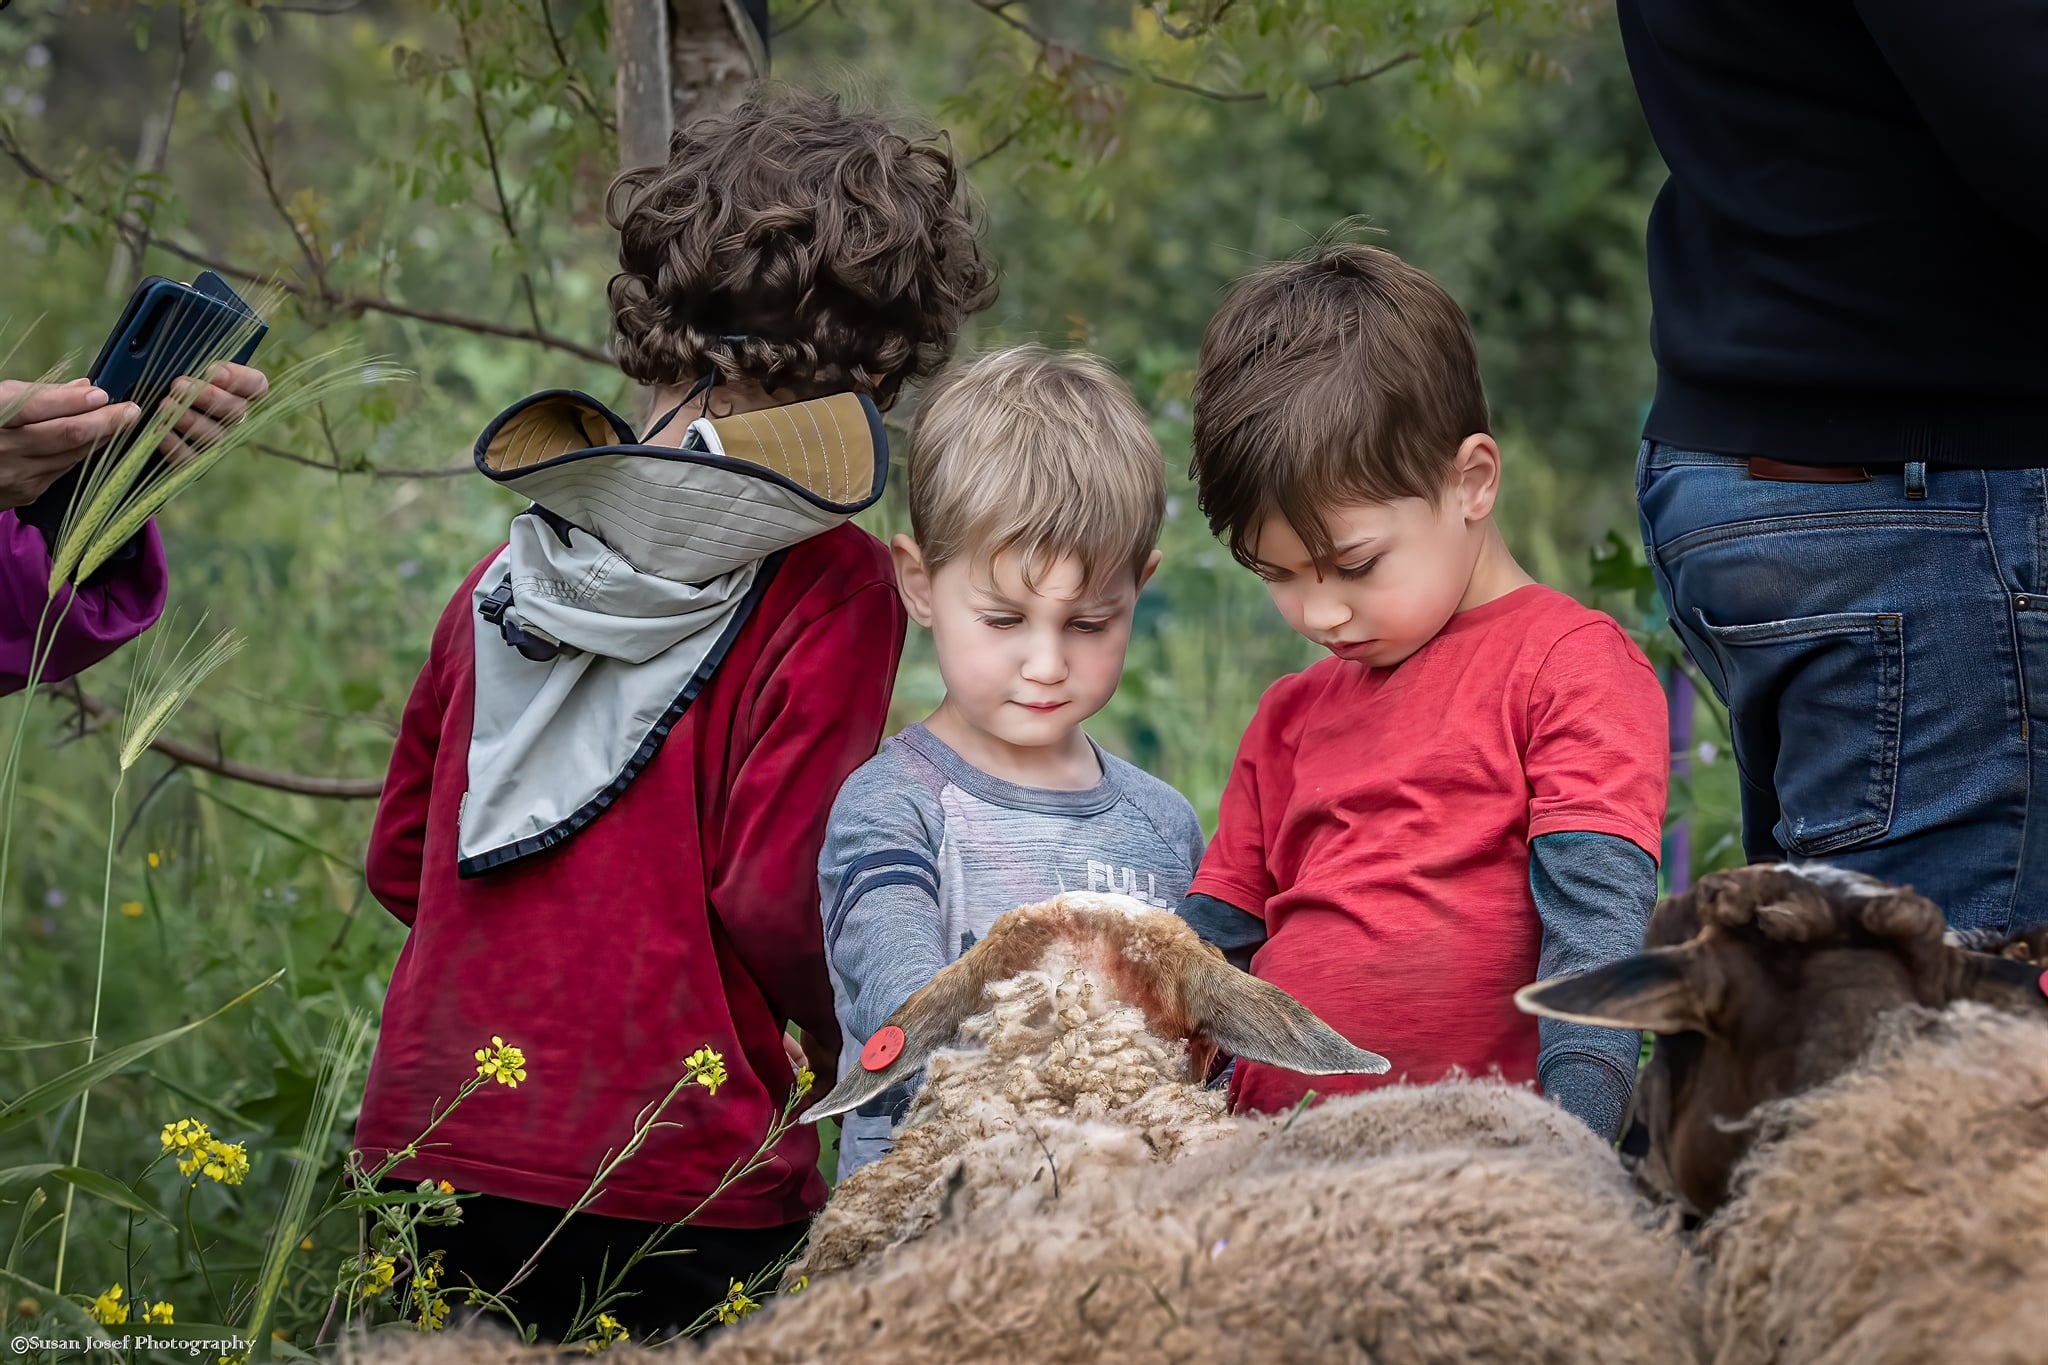 שלושה ילדים קטנים מלטפים כבשה